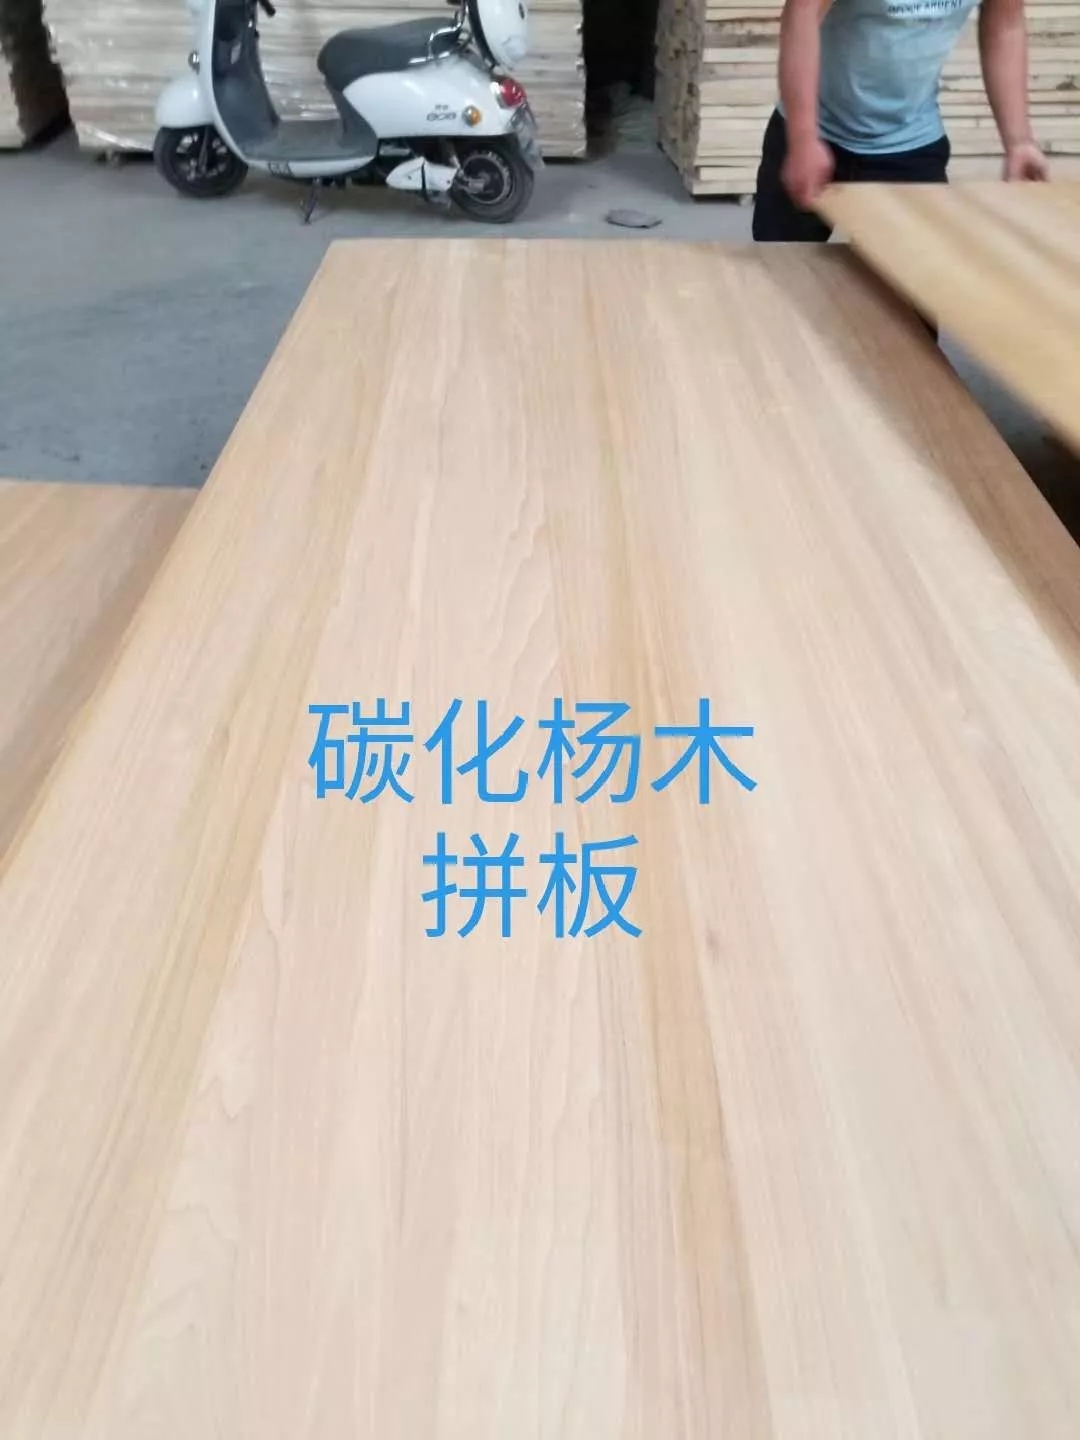 榆木家具板材 加工榆木板材 河南建淼木材加工厂 榆木烘干板材 厂家8